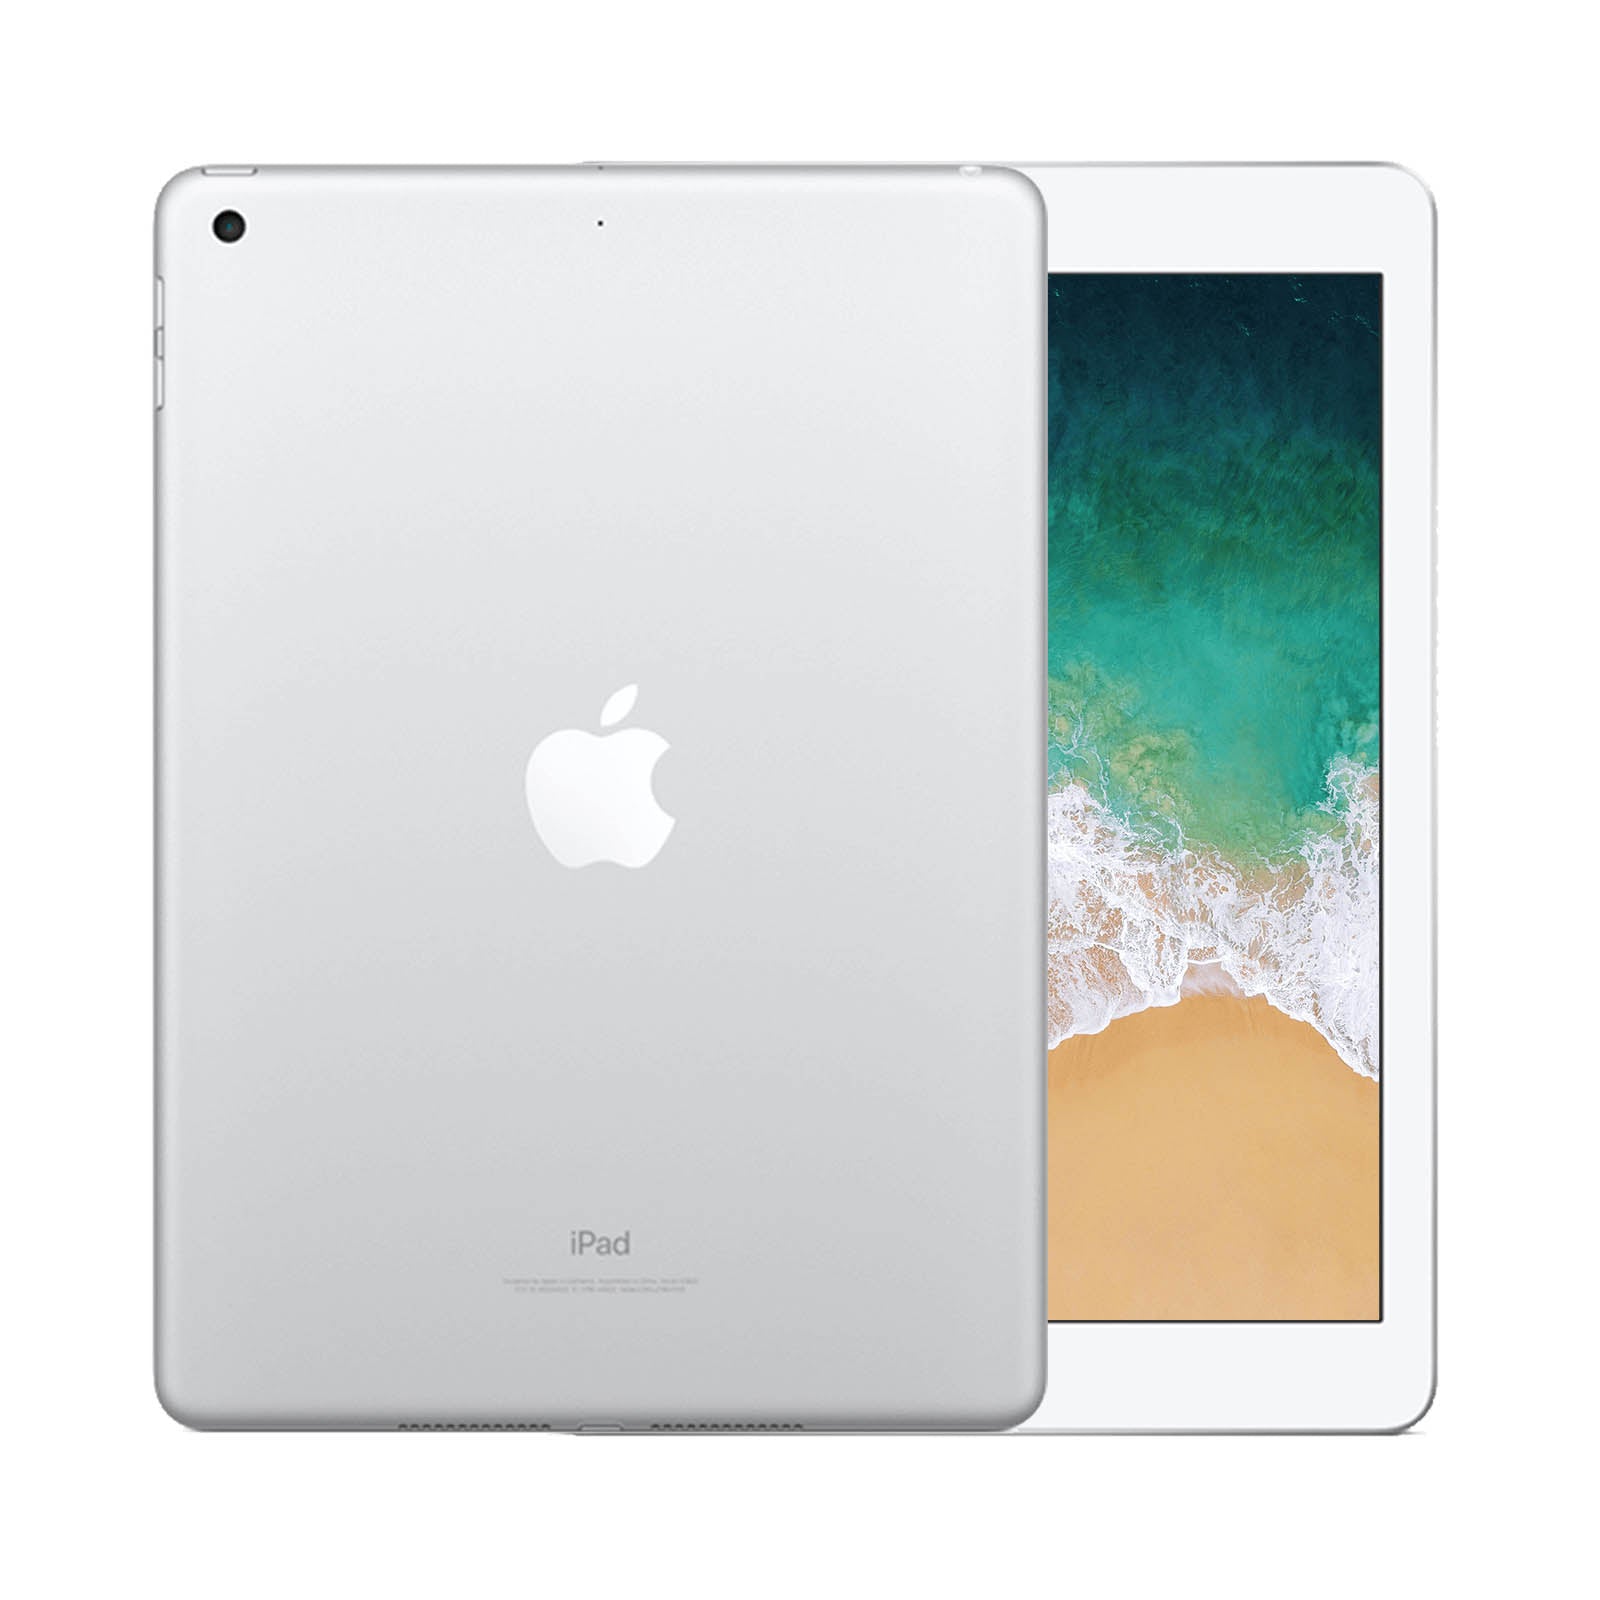 Apple iPad 5 32GB WiFi Silver - Good 32GB Silver Good